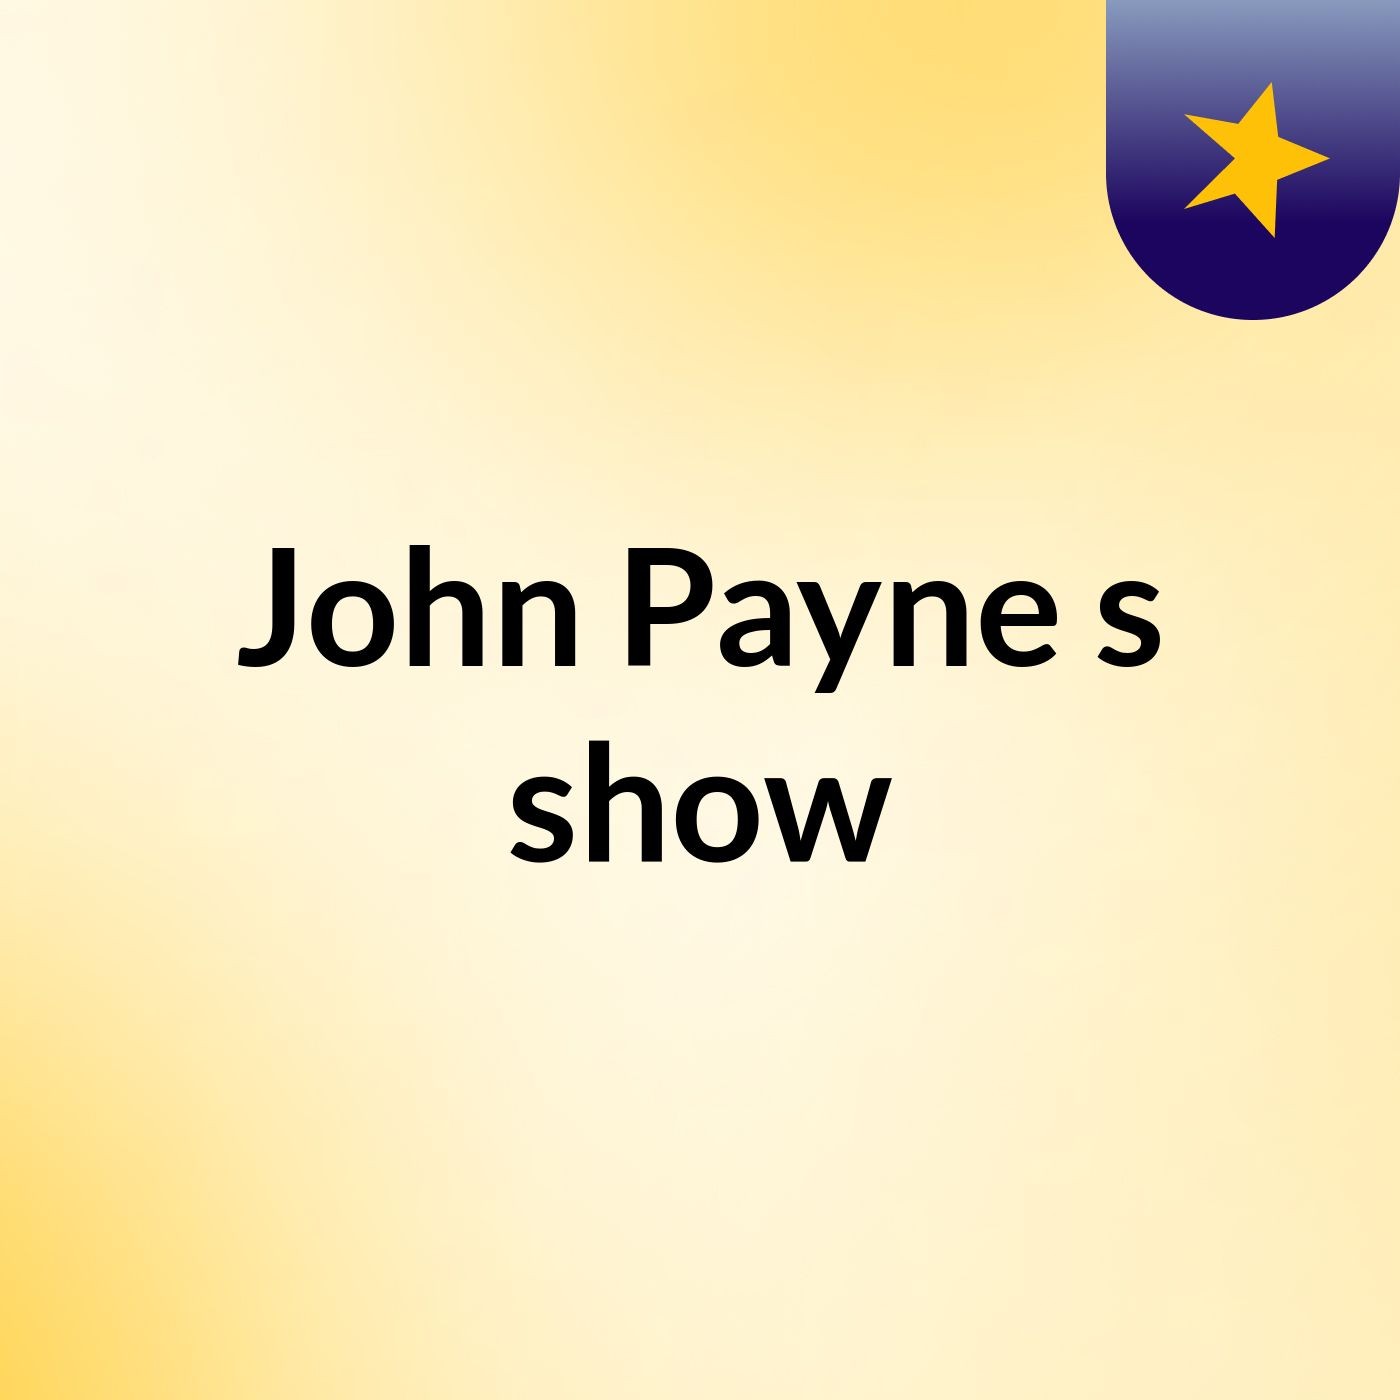 John Payne's show